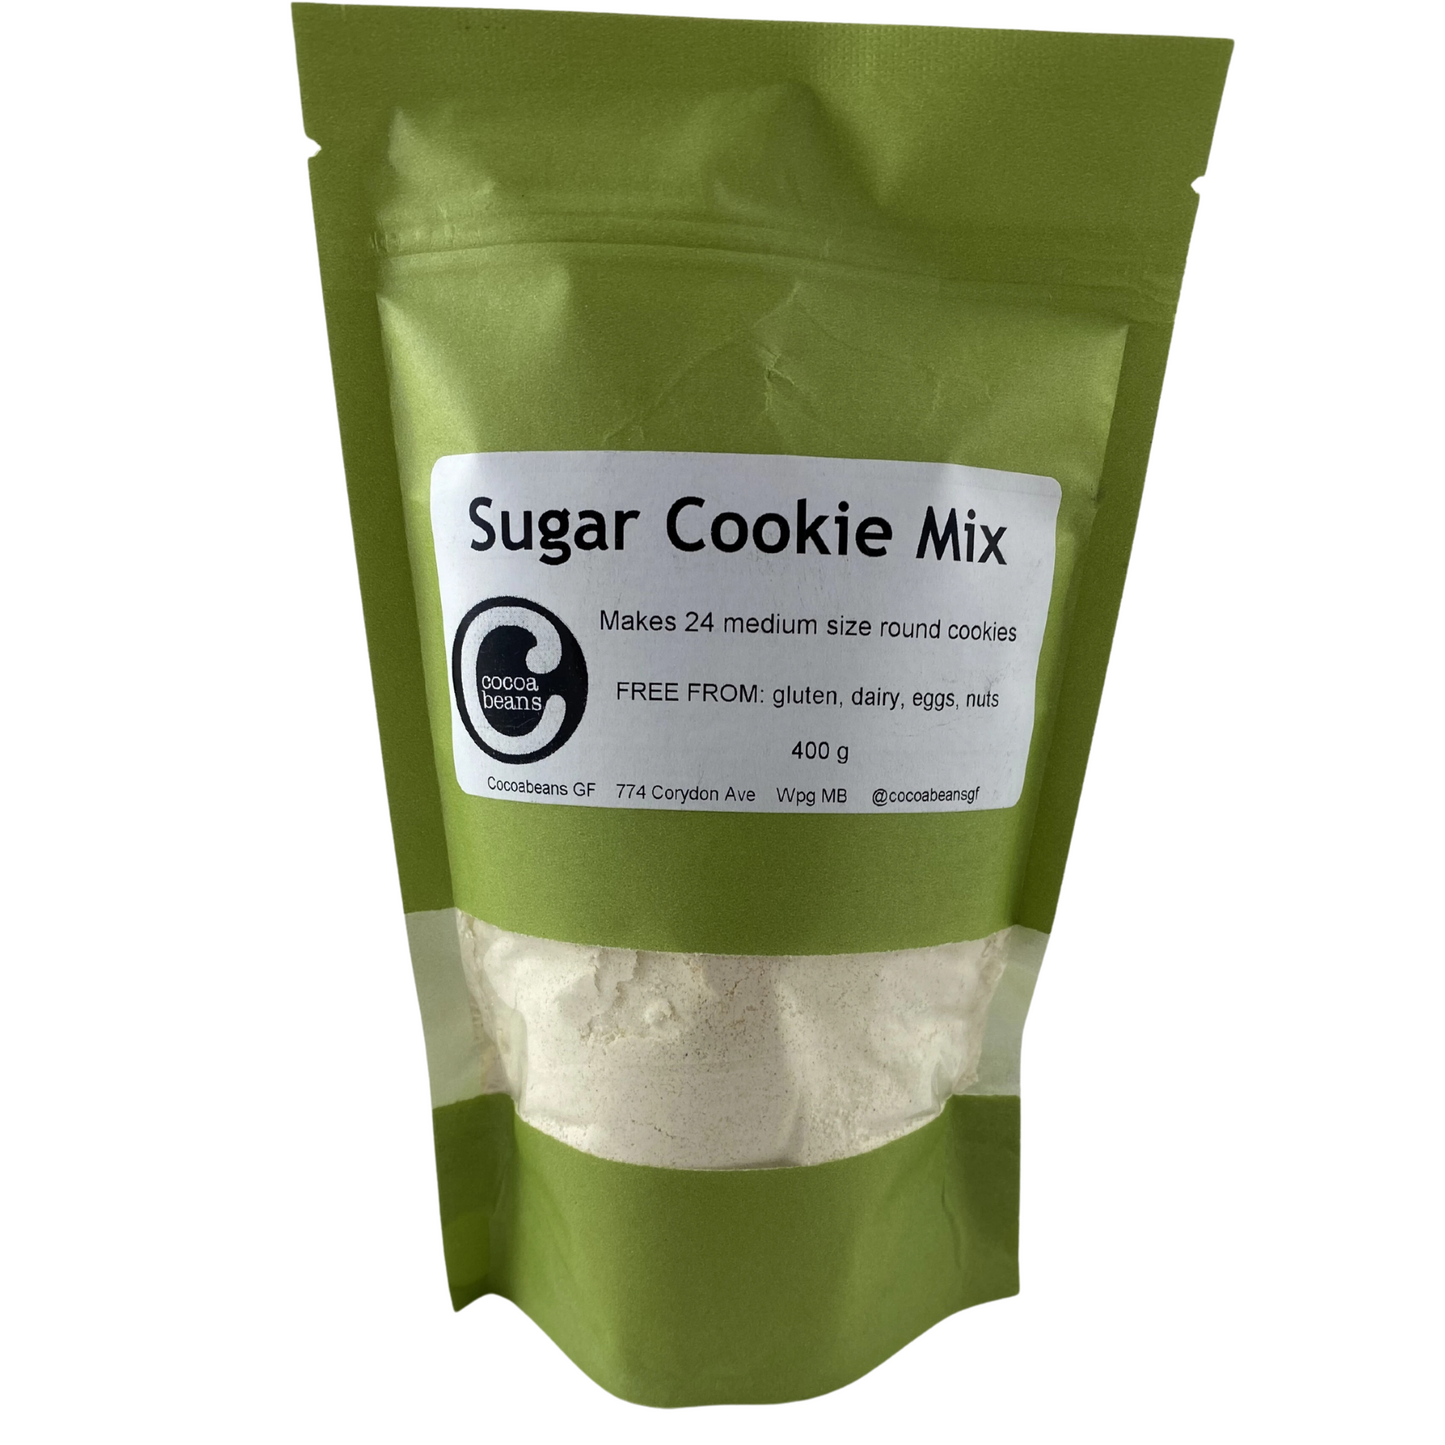 gluten-free, dairy-free, sugar cookie mix